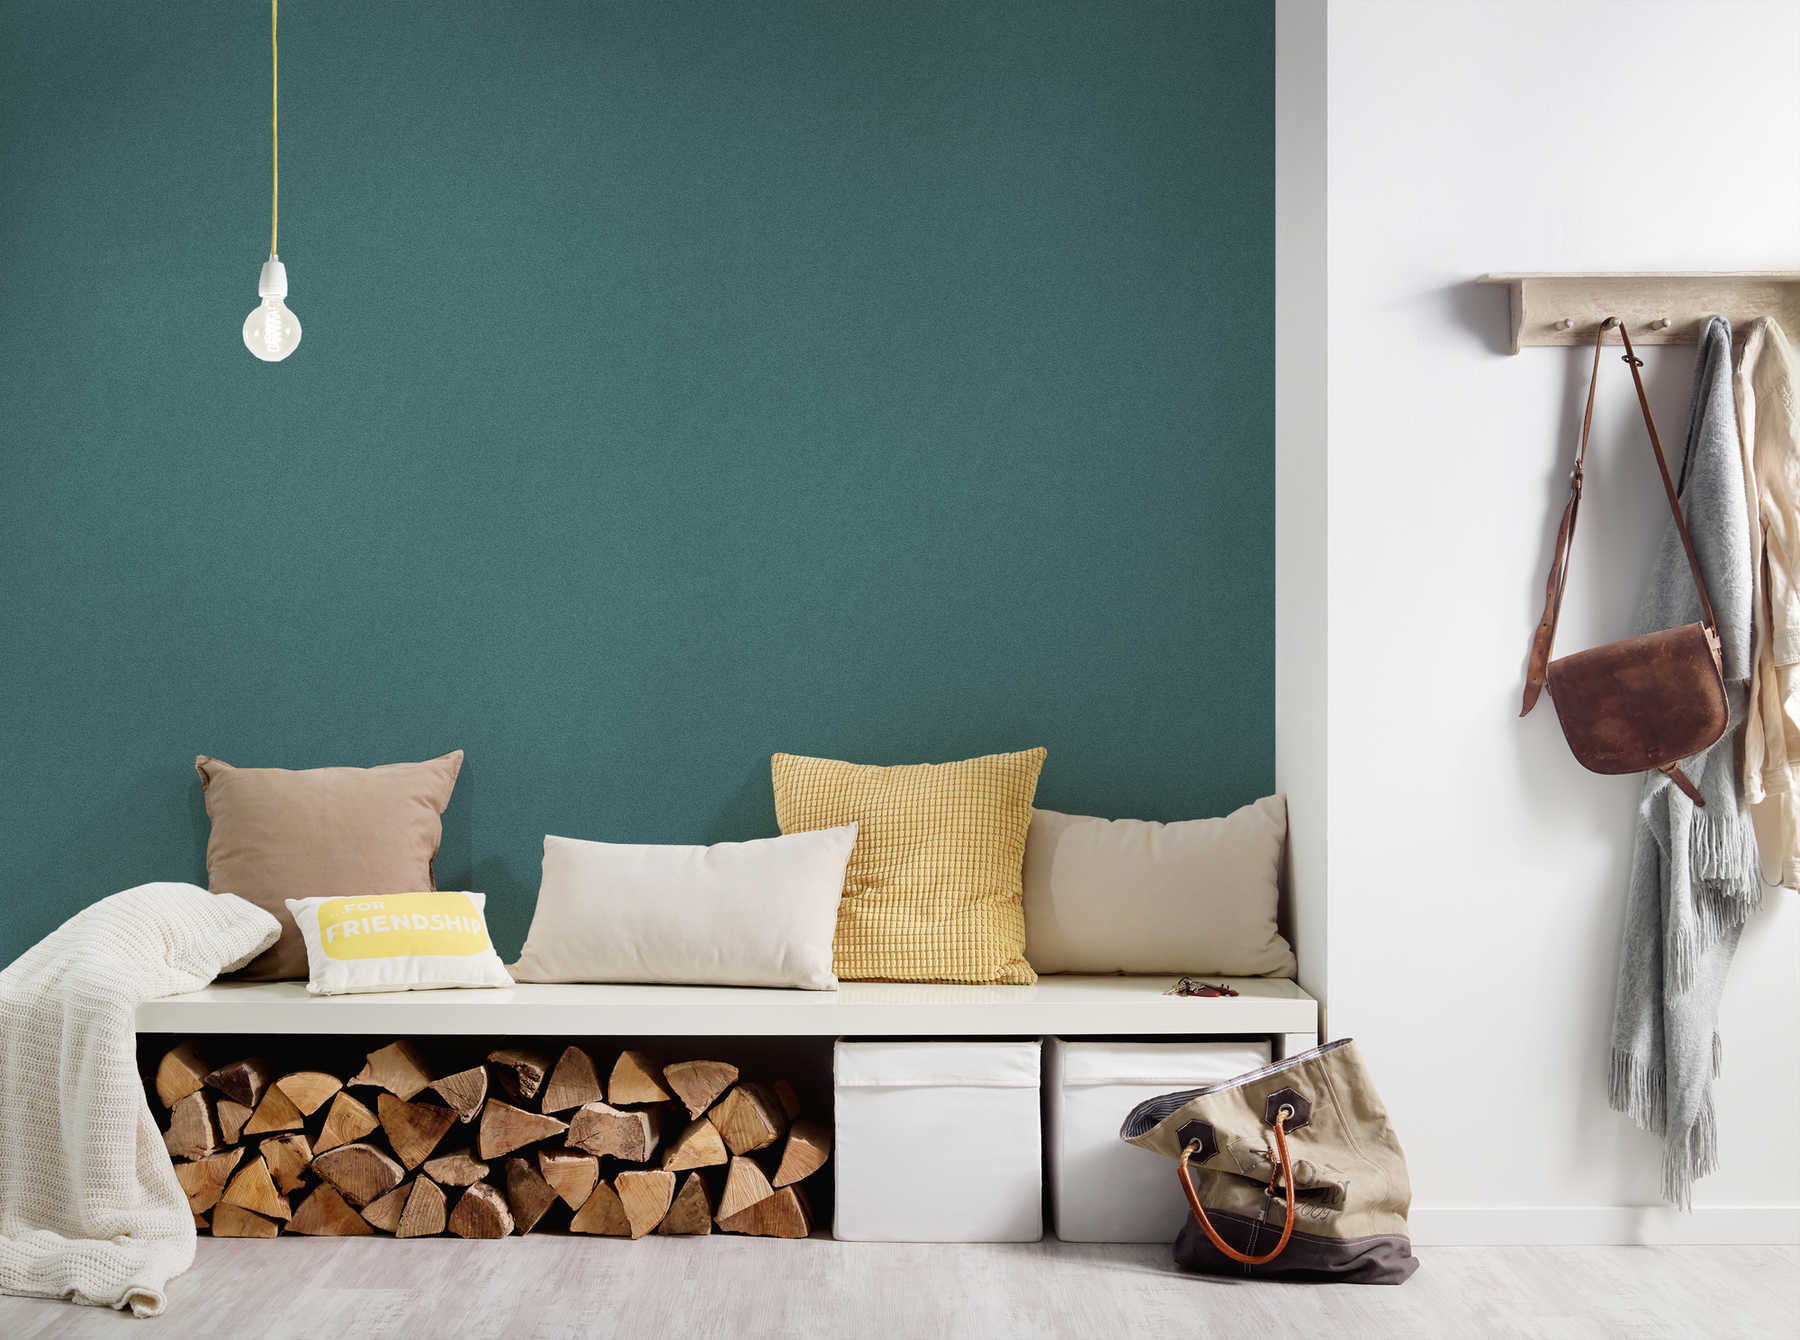             Plain wallpaper with linen look, textured - green, blue
        